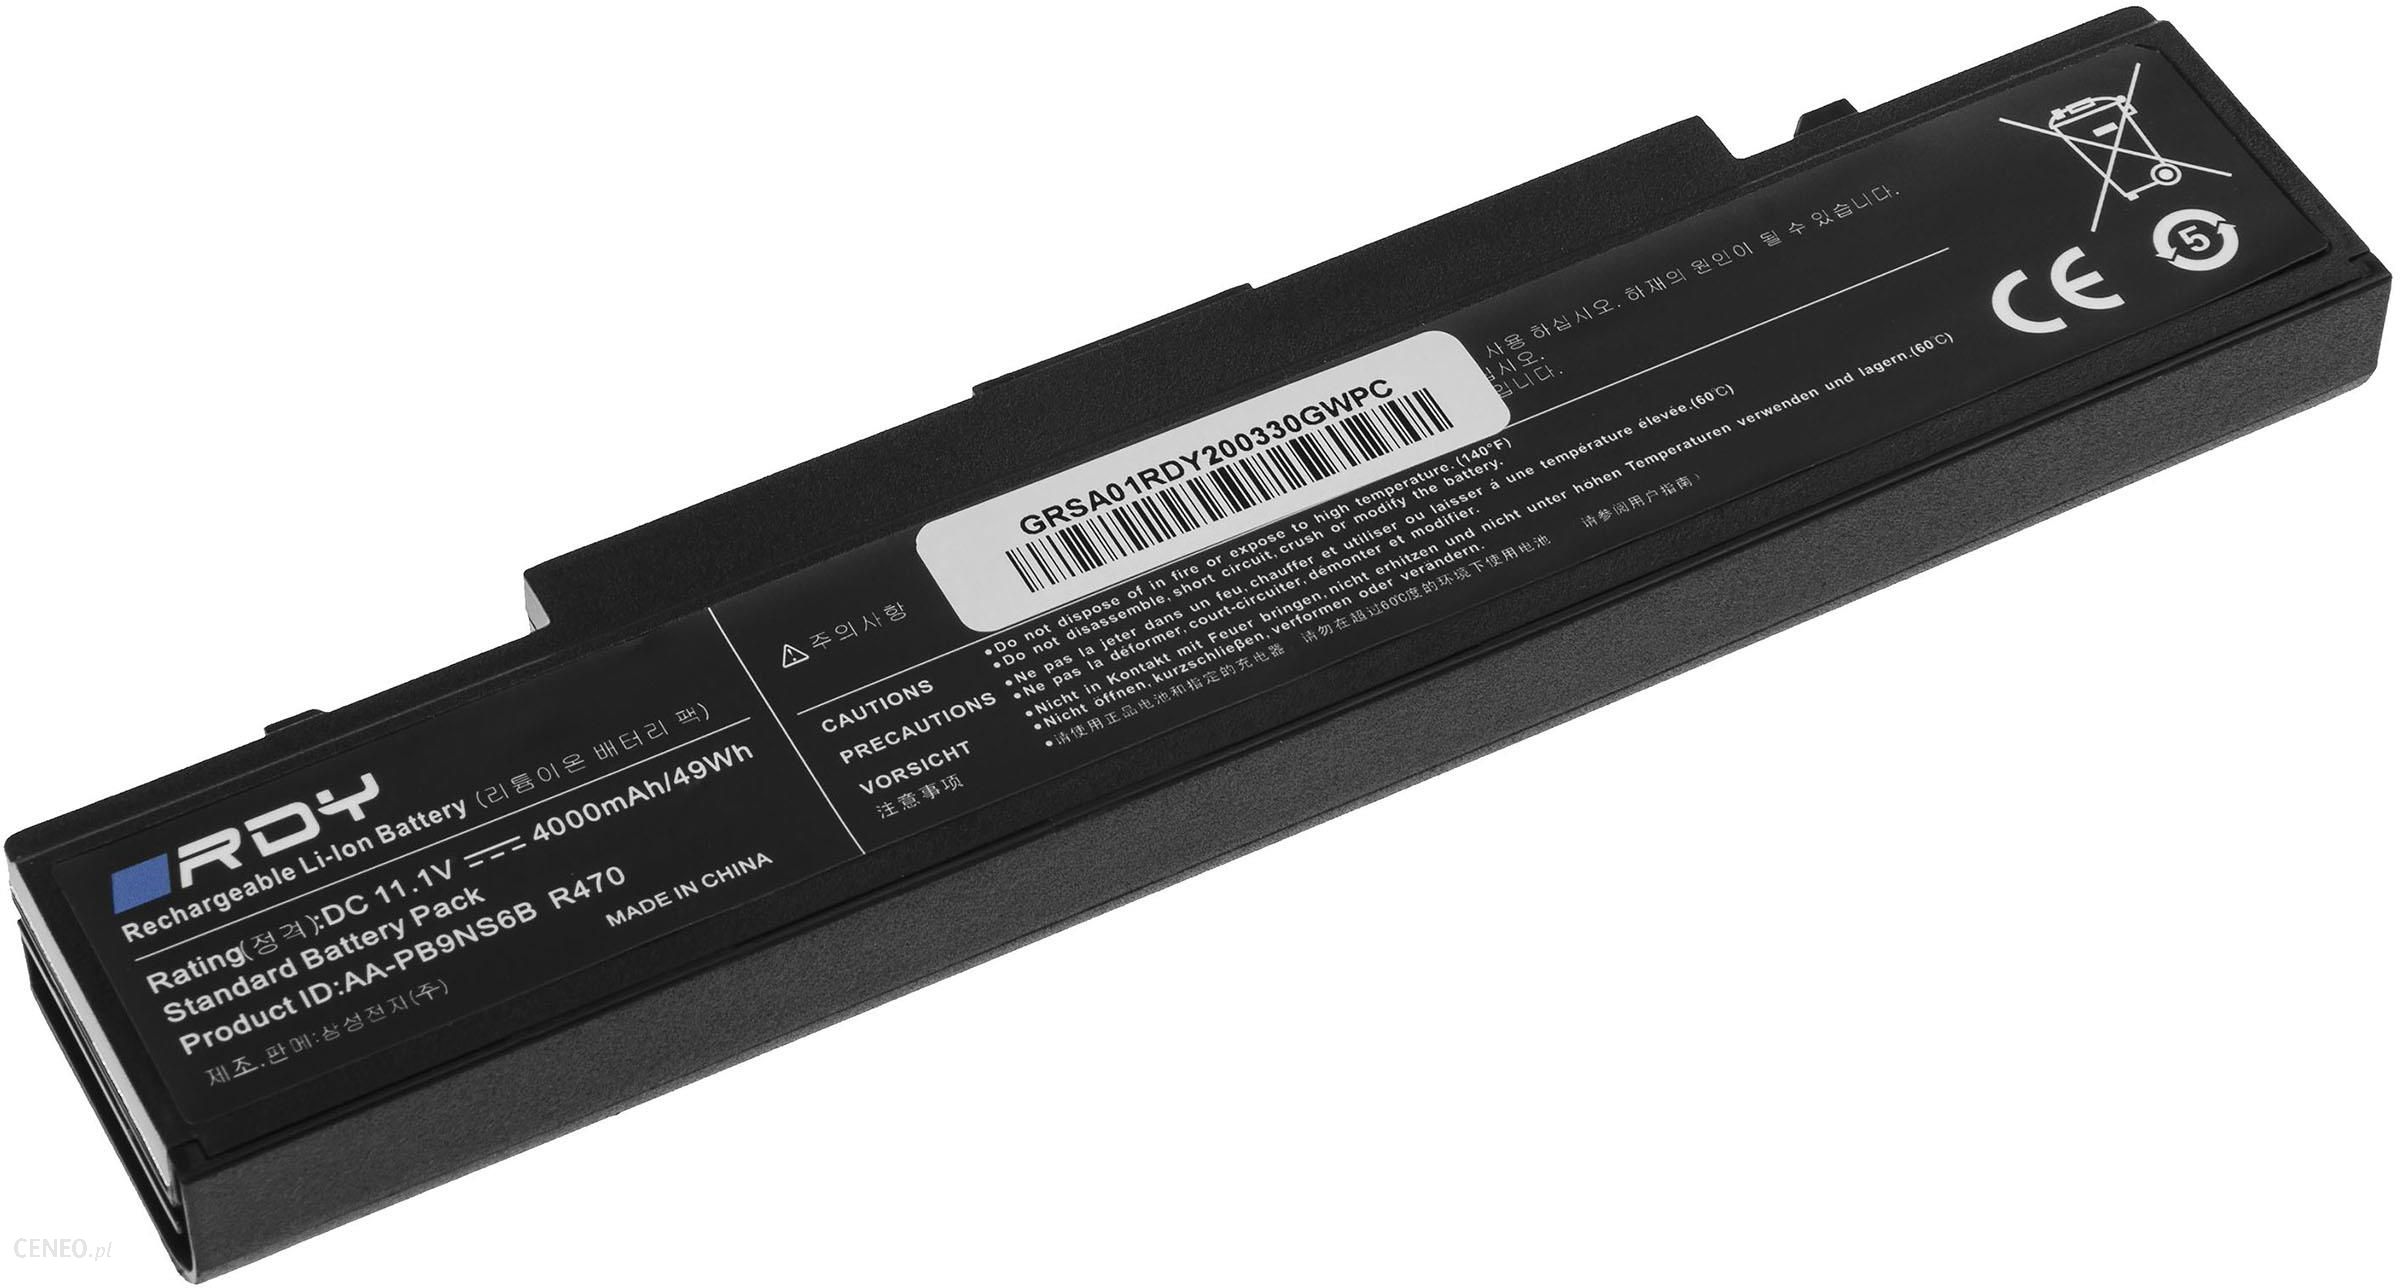 Rdy Bateria AA-PB9NC6B AA-PB9NS6B do Samsung R519 R522 R530 R540 R580 R620 R719 R780 RV510 RV511 NP350V5C NP300E5C (SA01BRDY)